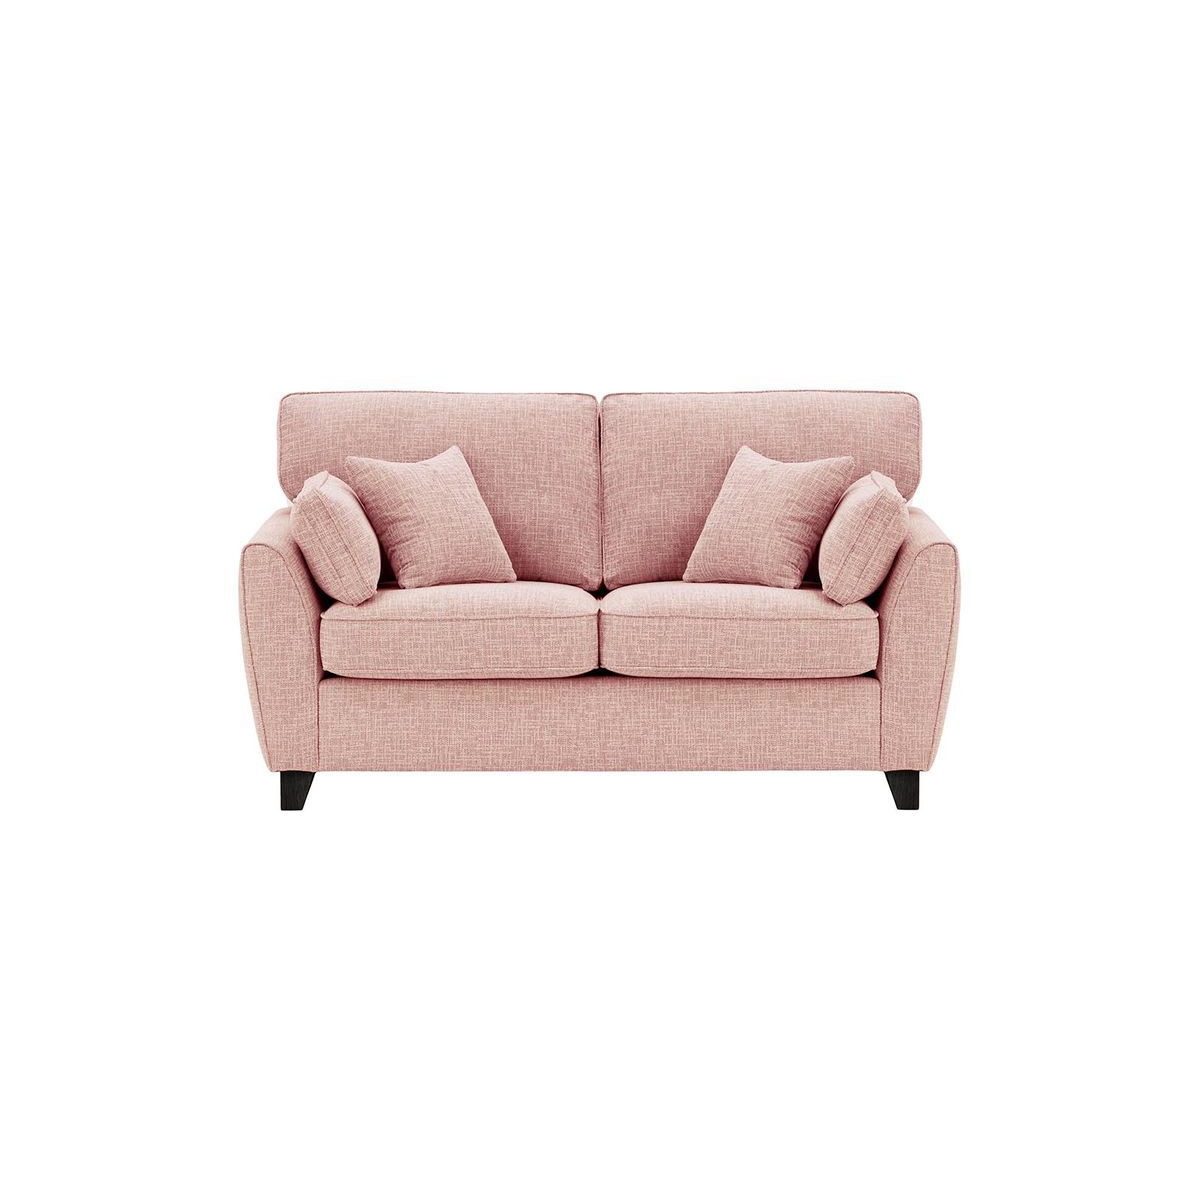 James 2 Seater Sofa, blush pink, Leg colour: black - image 1